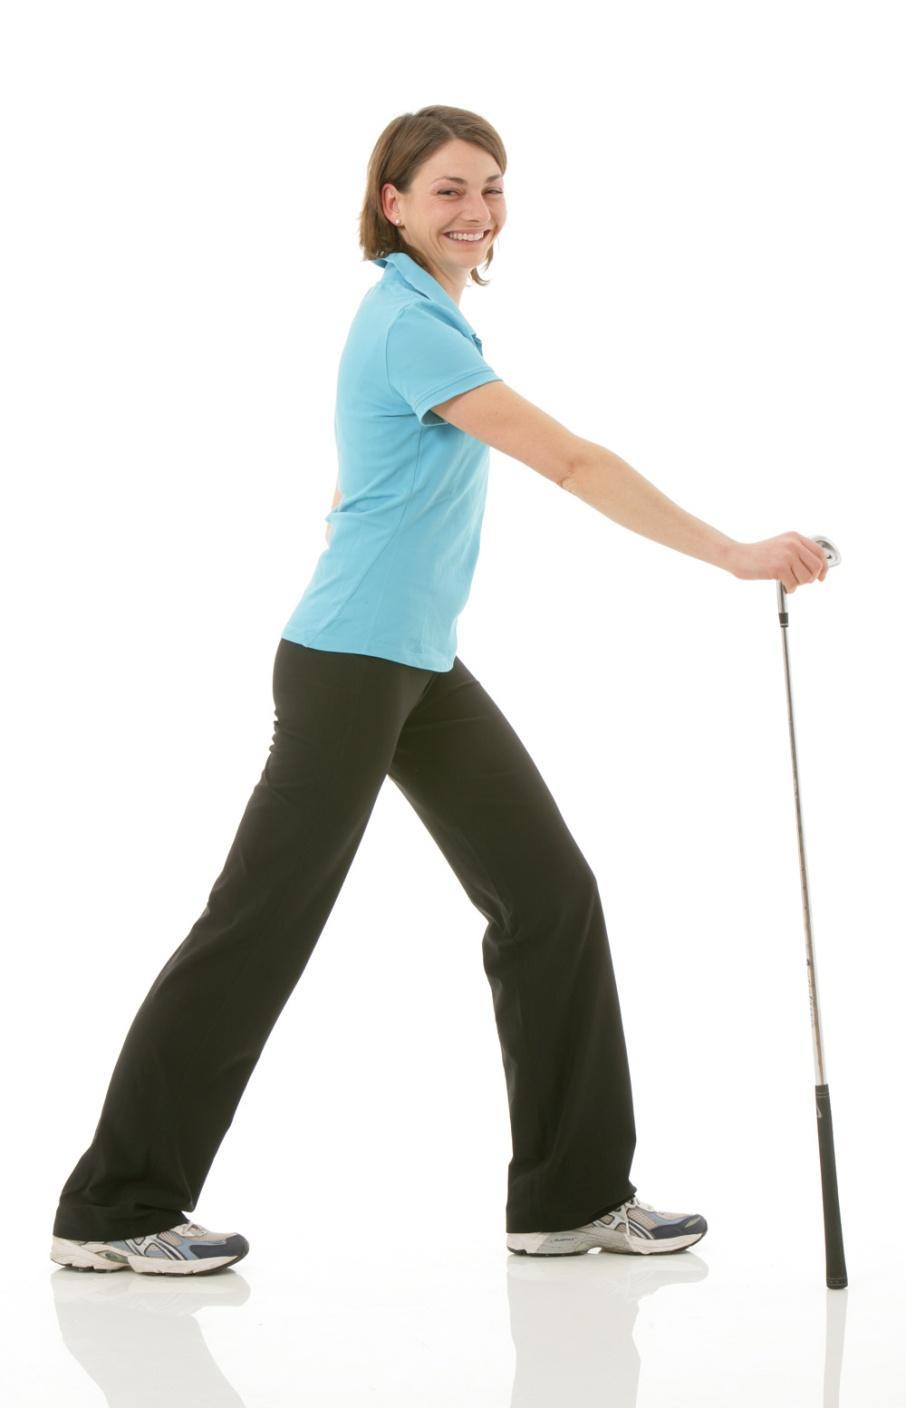 Mobilität der Wade Ein MUSS für jeden Golfer: Ein Bein nach vorn stellen leicht in die Knie gehen, Golfschläger dient als Stütze, das andere Bein nach hinten stellen, Ferse bleibt am